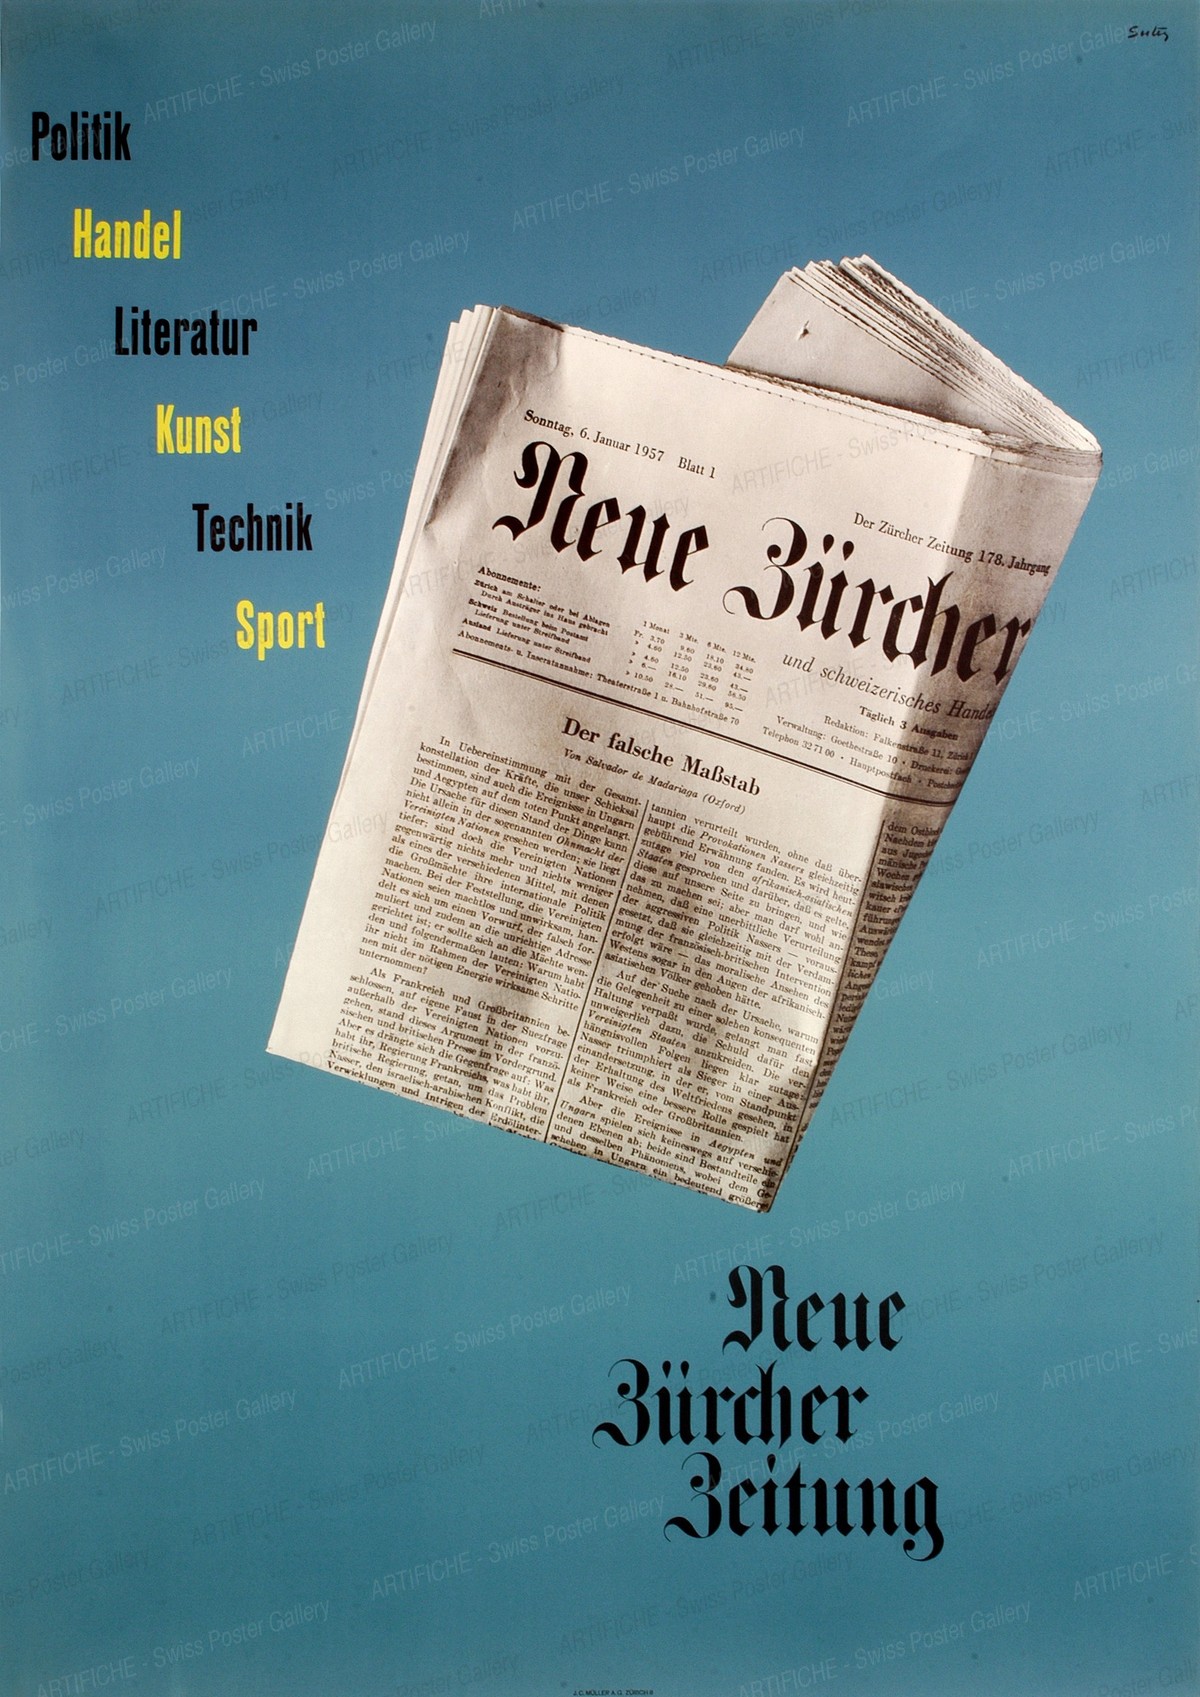 Neue Zürcher Zeitung – Politik – Handel – Literatur – Kunst – Technik – Sport, Hermann Suter